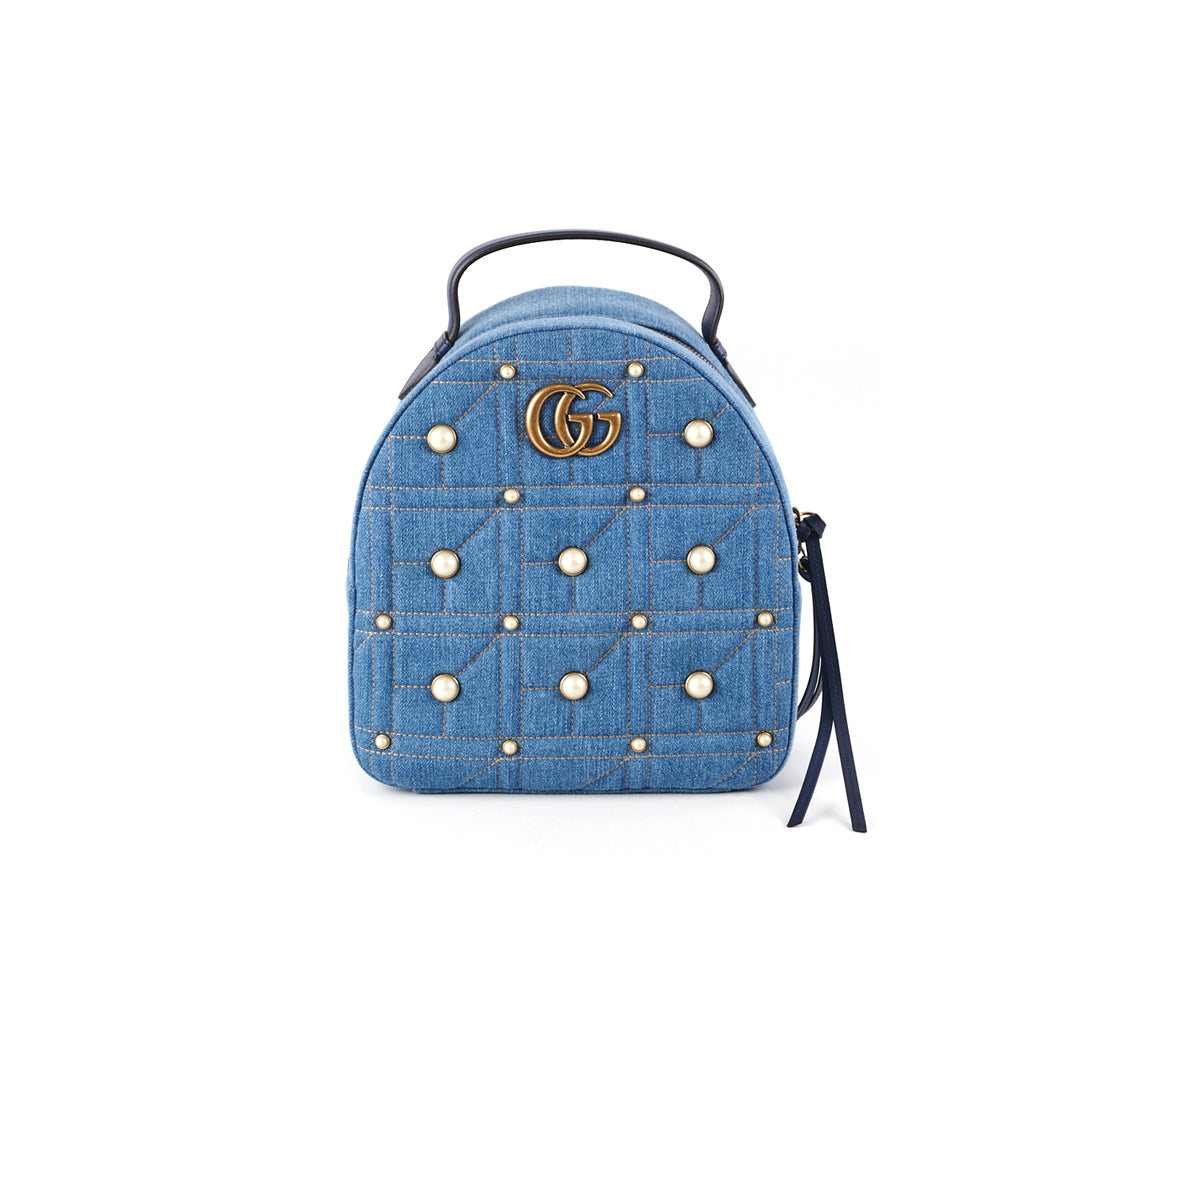 Gucci Backpack Pearl Blue Denim - THE PURSE AFFAIR